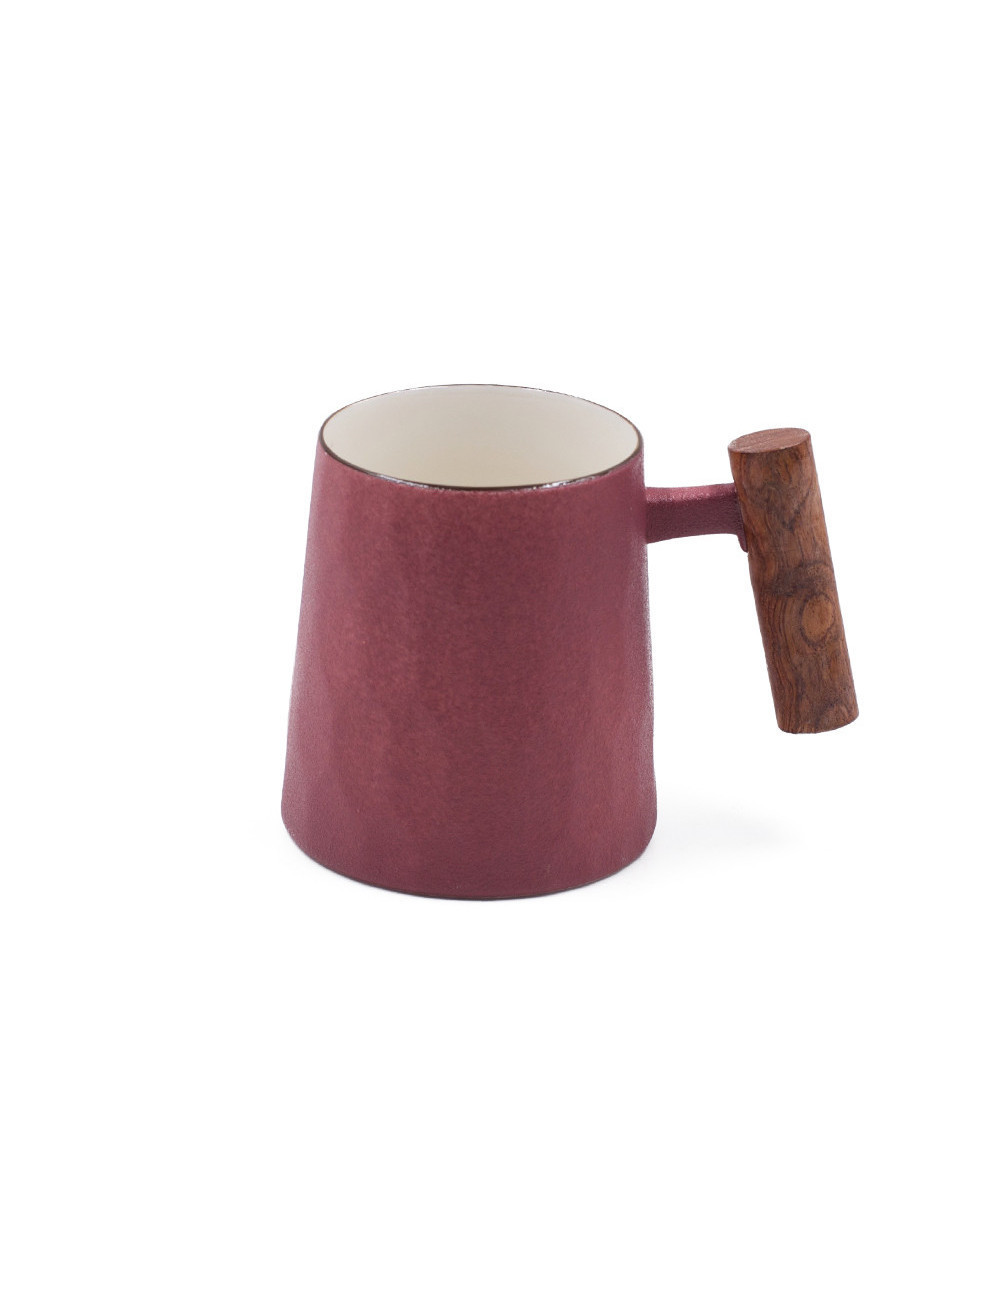 Mug stile anni '70 Old Style in porcellana rossa effetto ghisa satinata - La Pianta del Tè shop on line